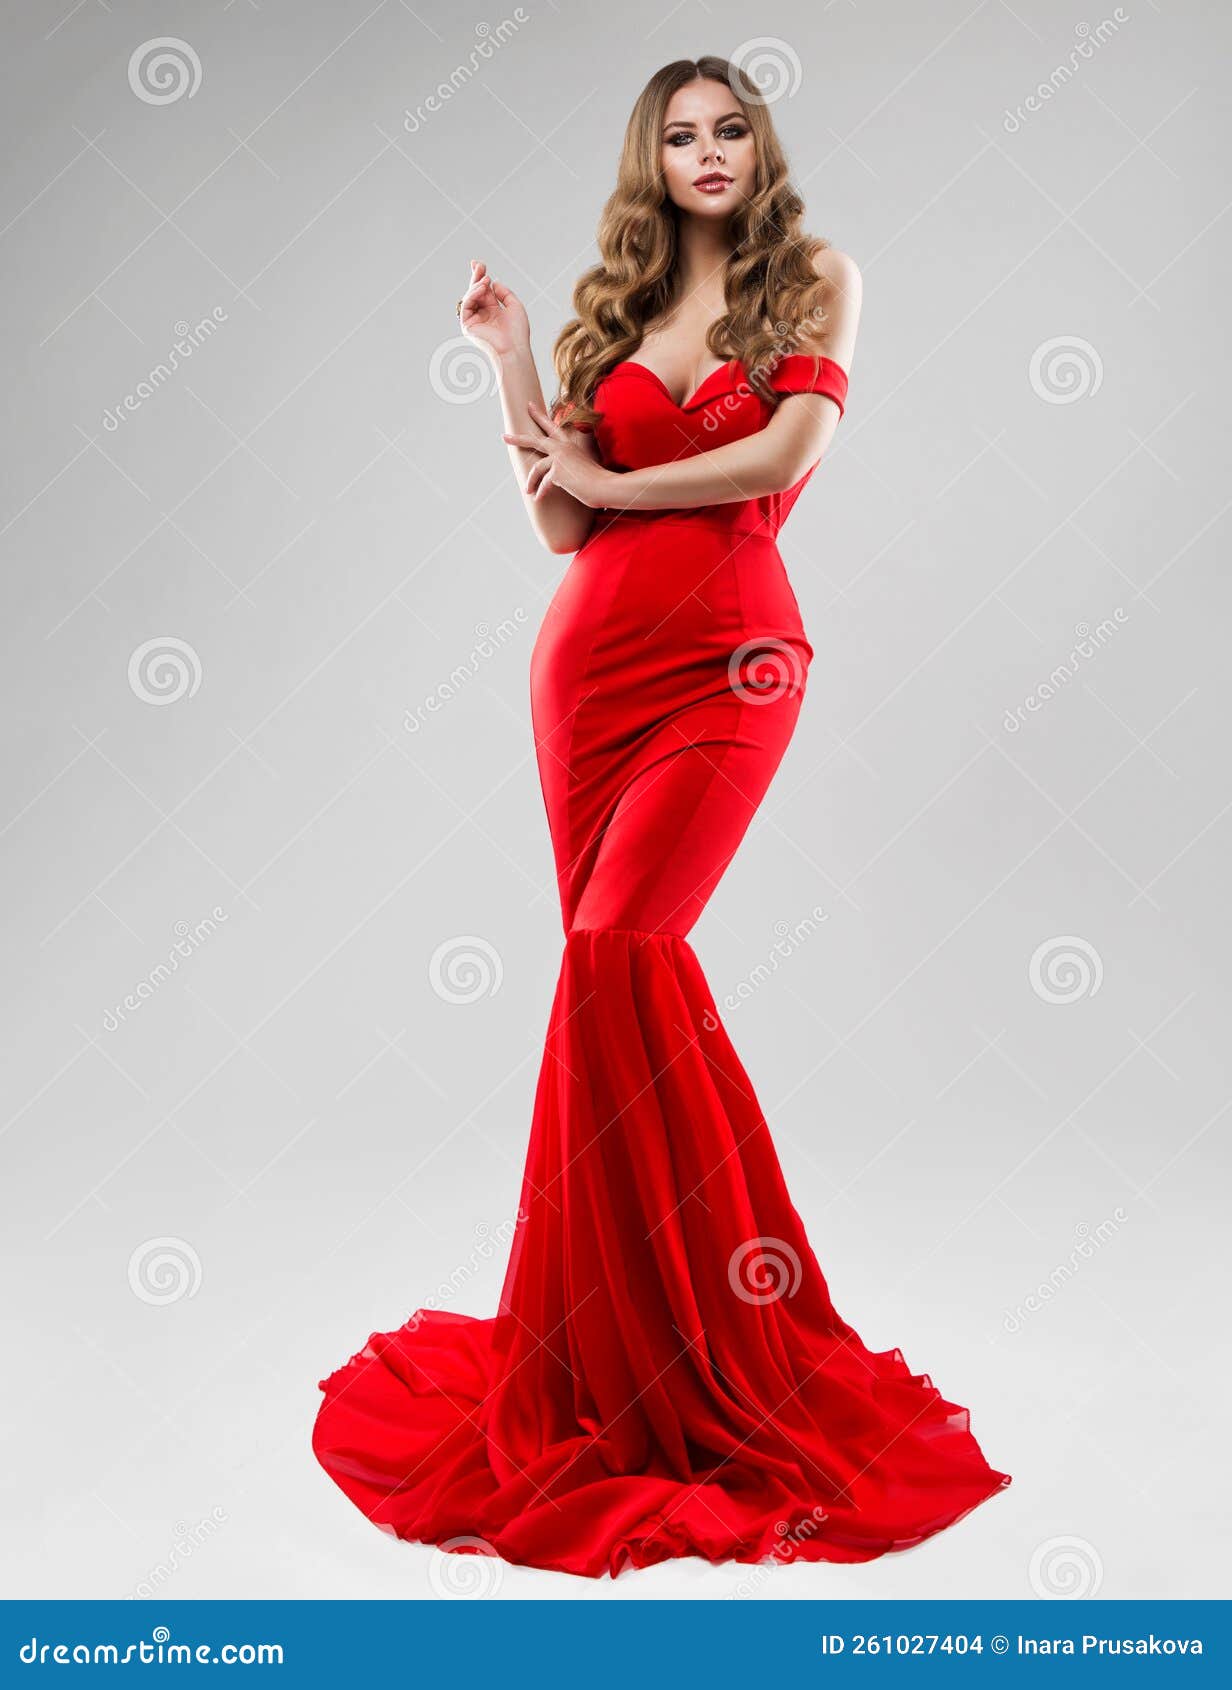 Bello Modelo Con Un Largo Vestido Rojo. Mujer De La Moda En La Sirena De Gamo Sobre Blanco. Glamour Con Peinado Ondulado Foto de archivo - Imagen de gris, celebridades: